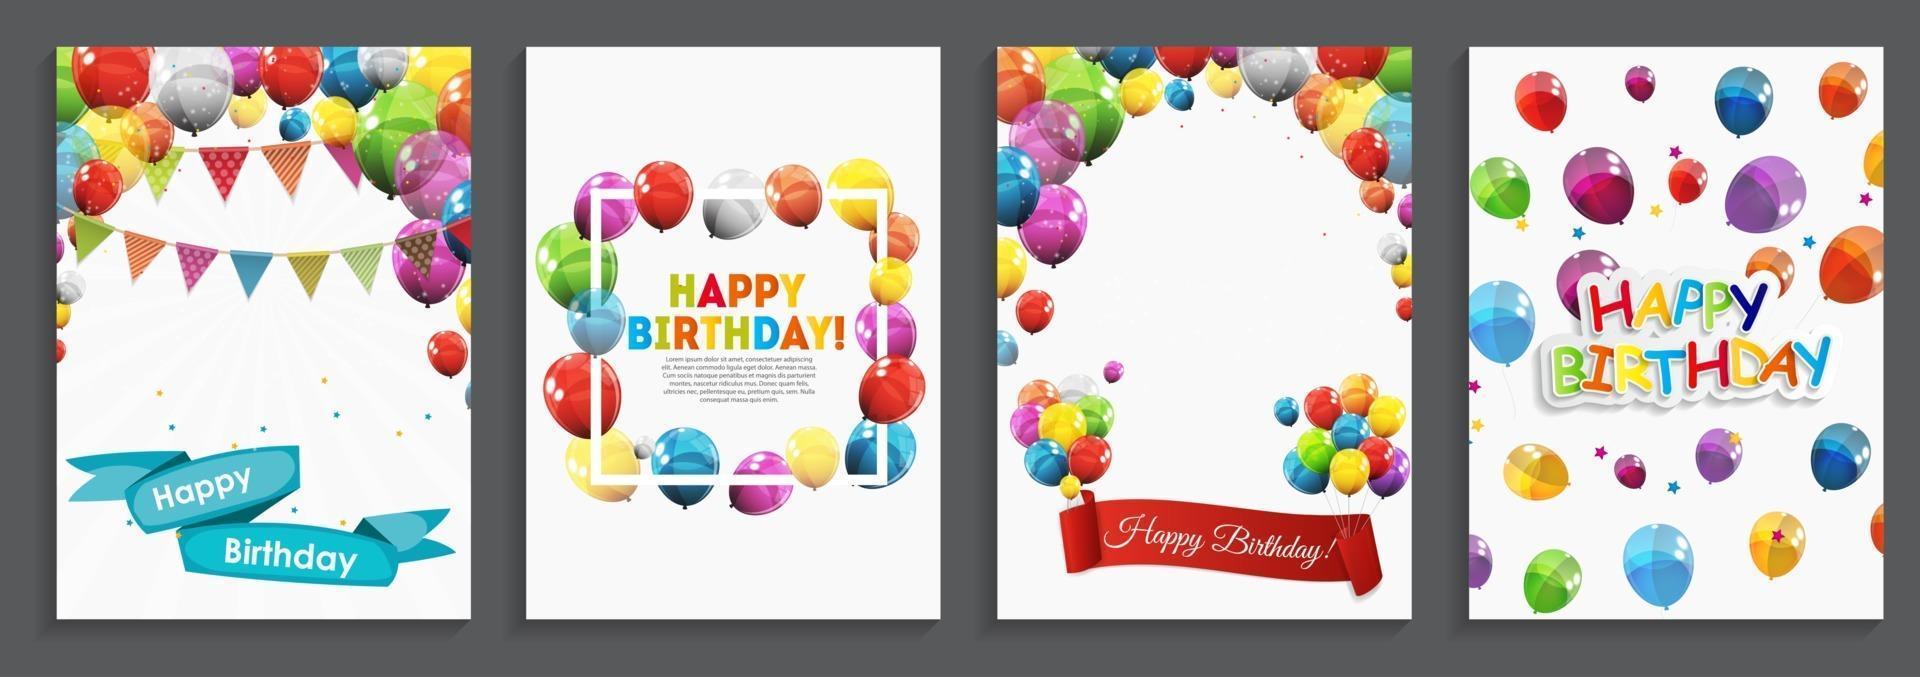 Alles Gute zum Geburtstag, Feiertagsgruß und Einladungskartenschablone gesetzt mit Luftballons und Fahnen vektor